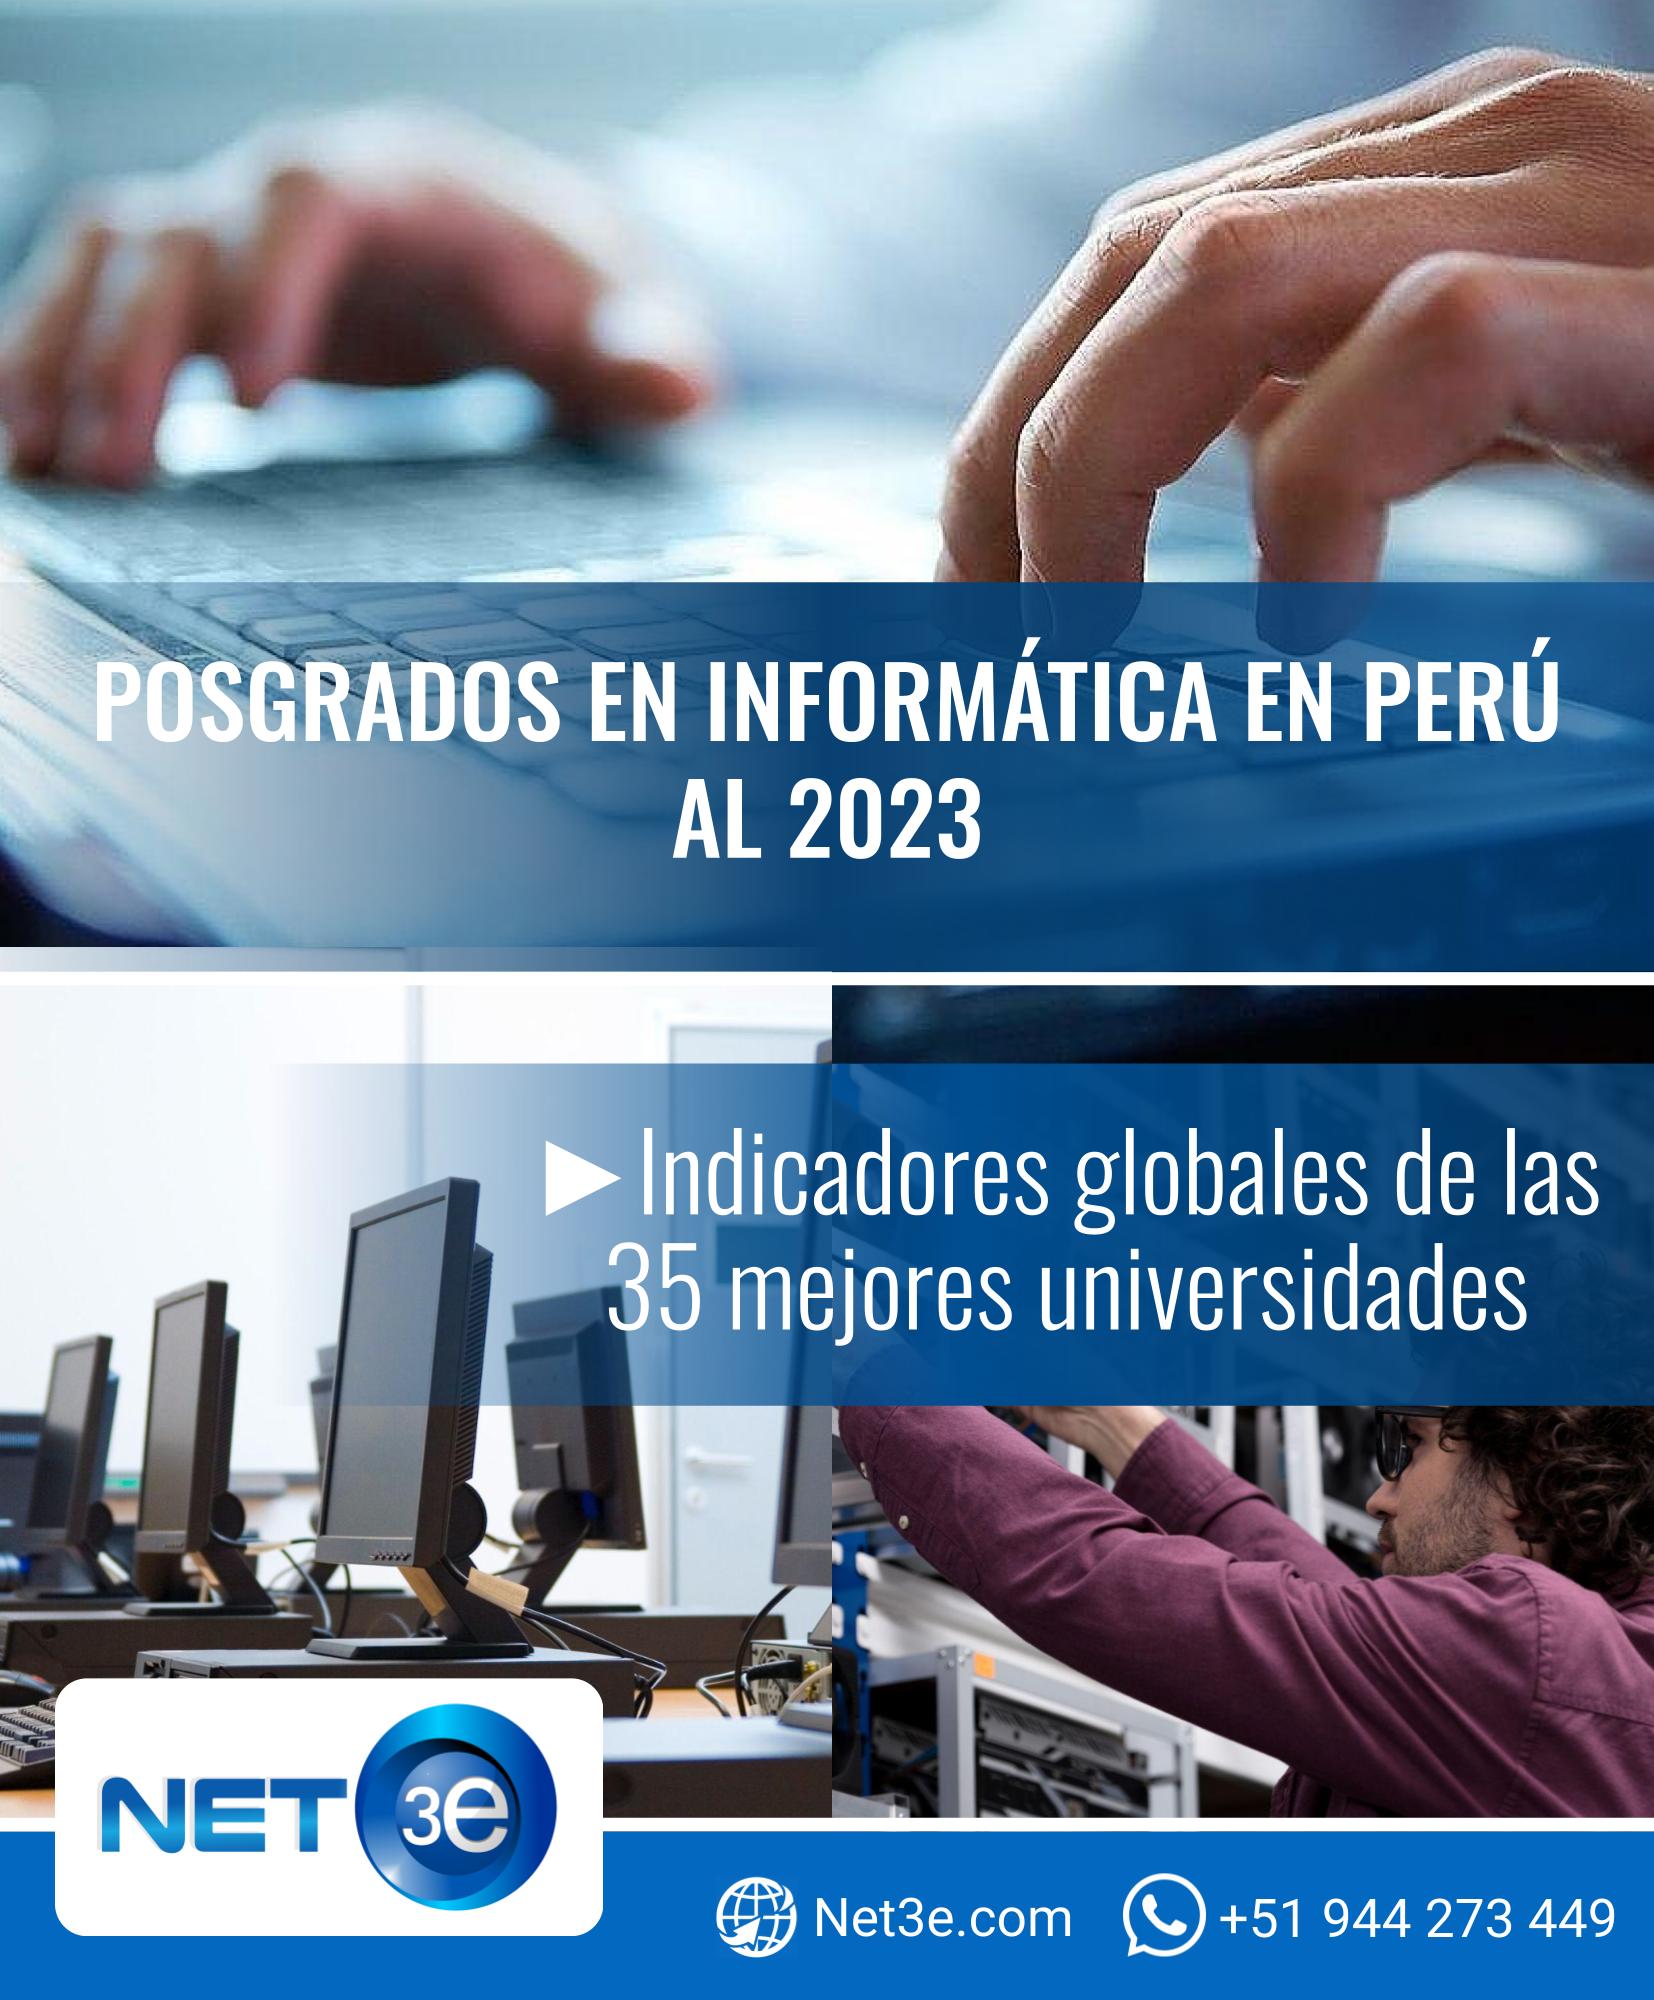 NET3EVER REPORTE POSGRADOS EN INFORMÁTICA EN PERÚ AL 2023DIAGNÓSTICO EN PPT